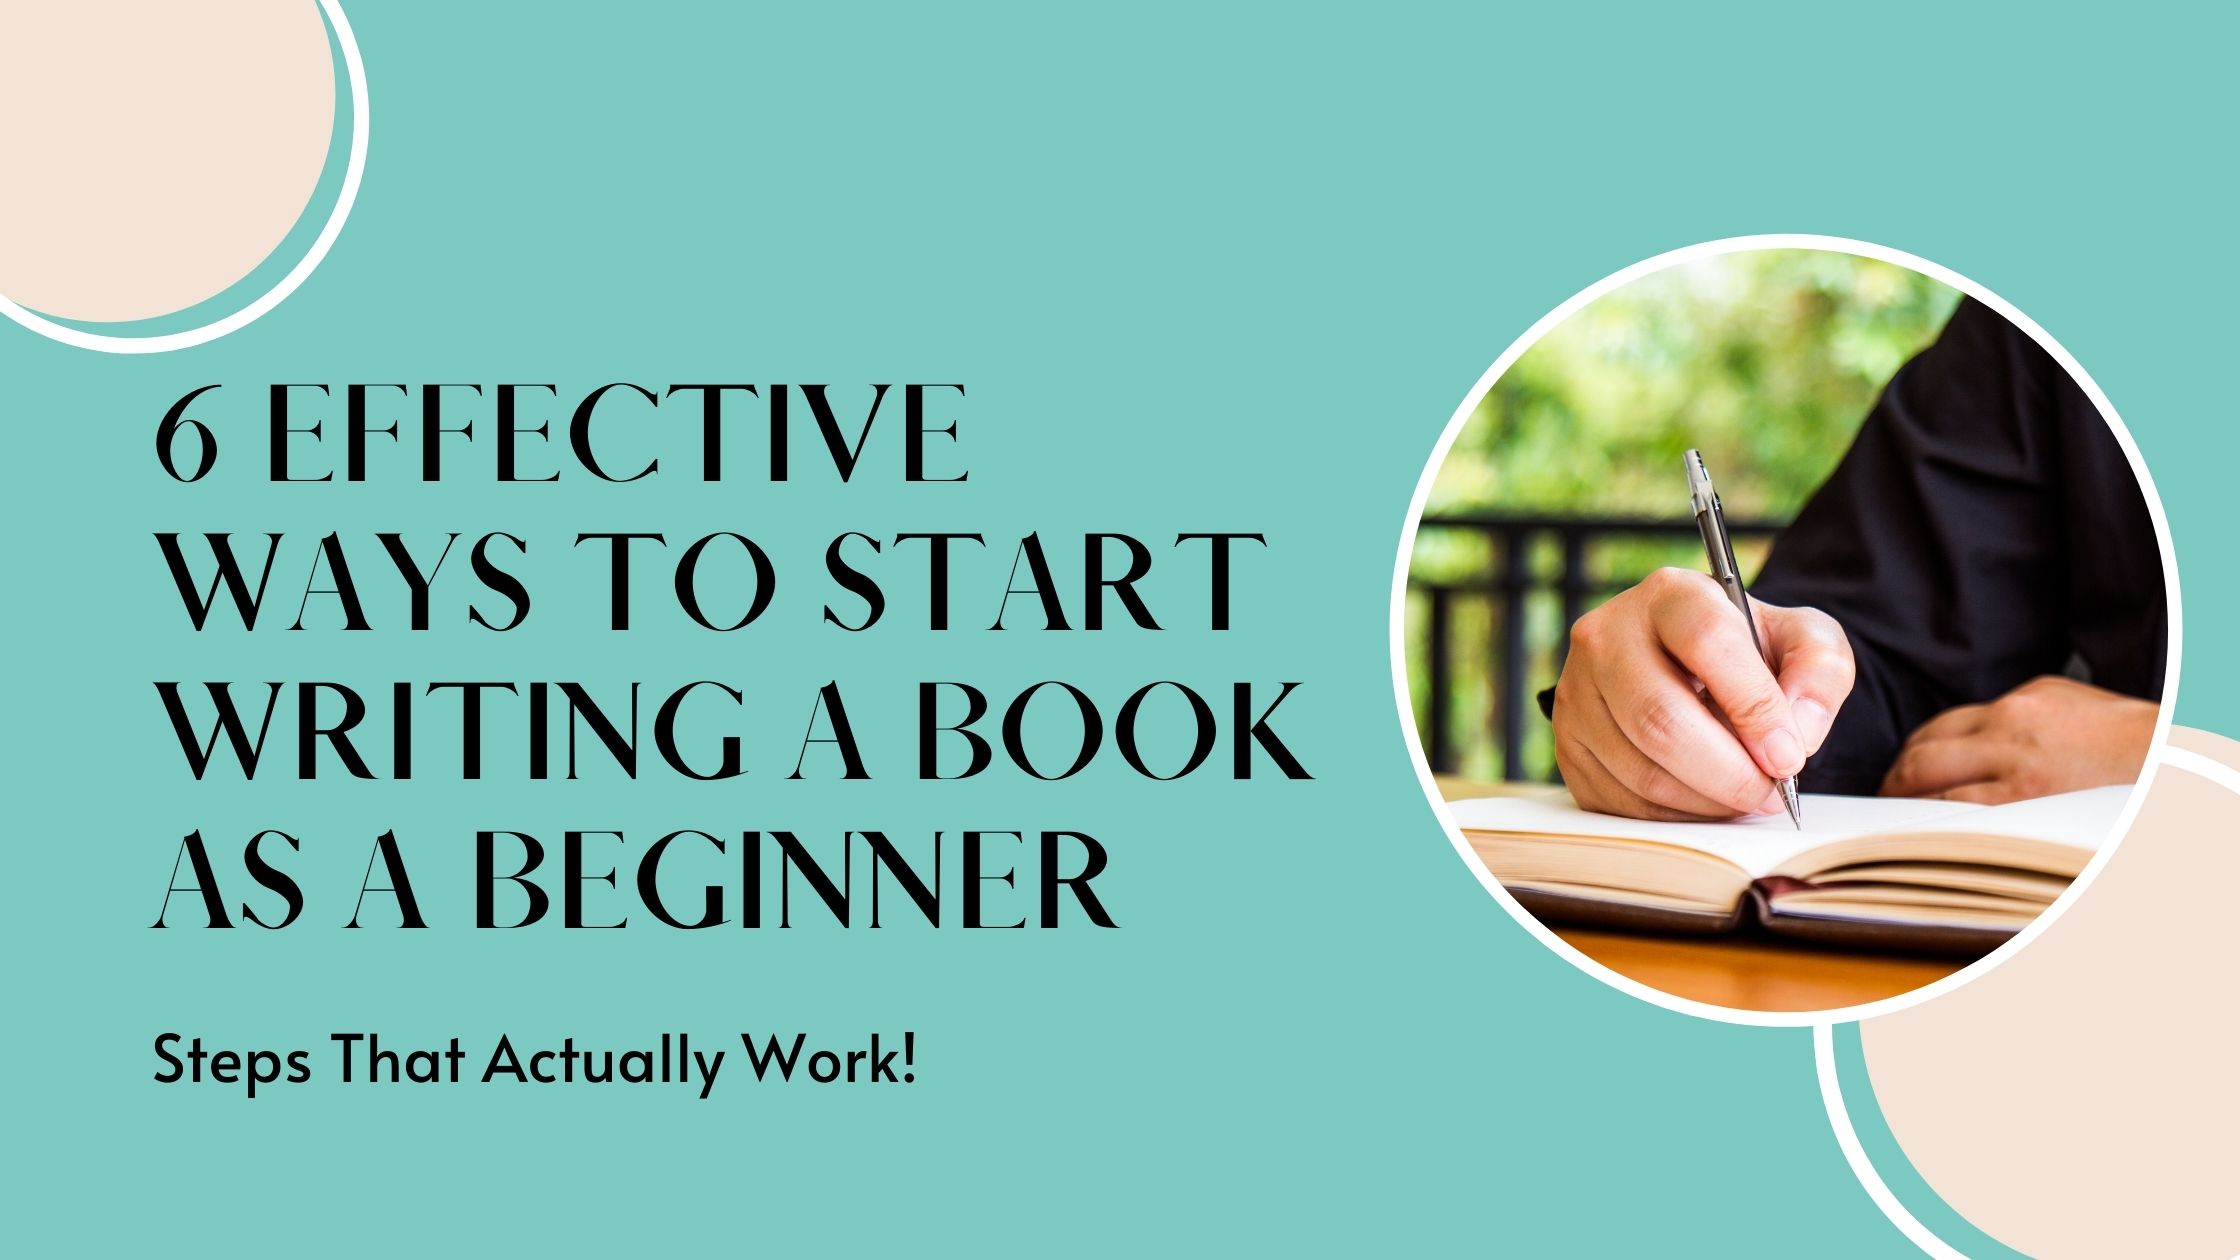 6 effective ways to start writing a book as a beginner